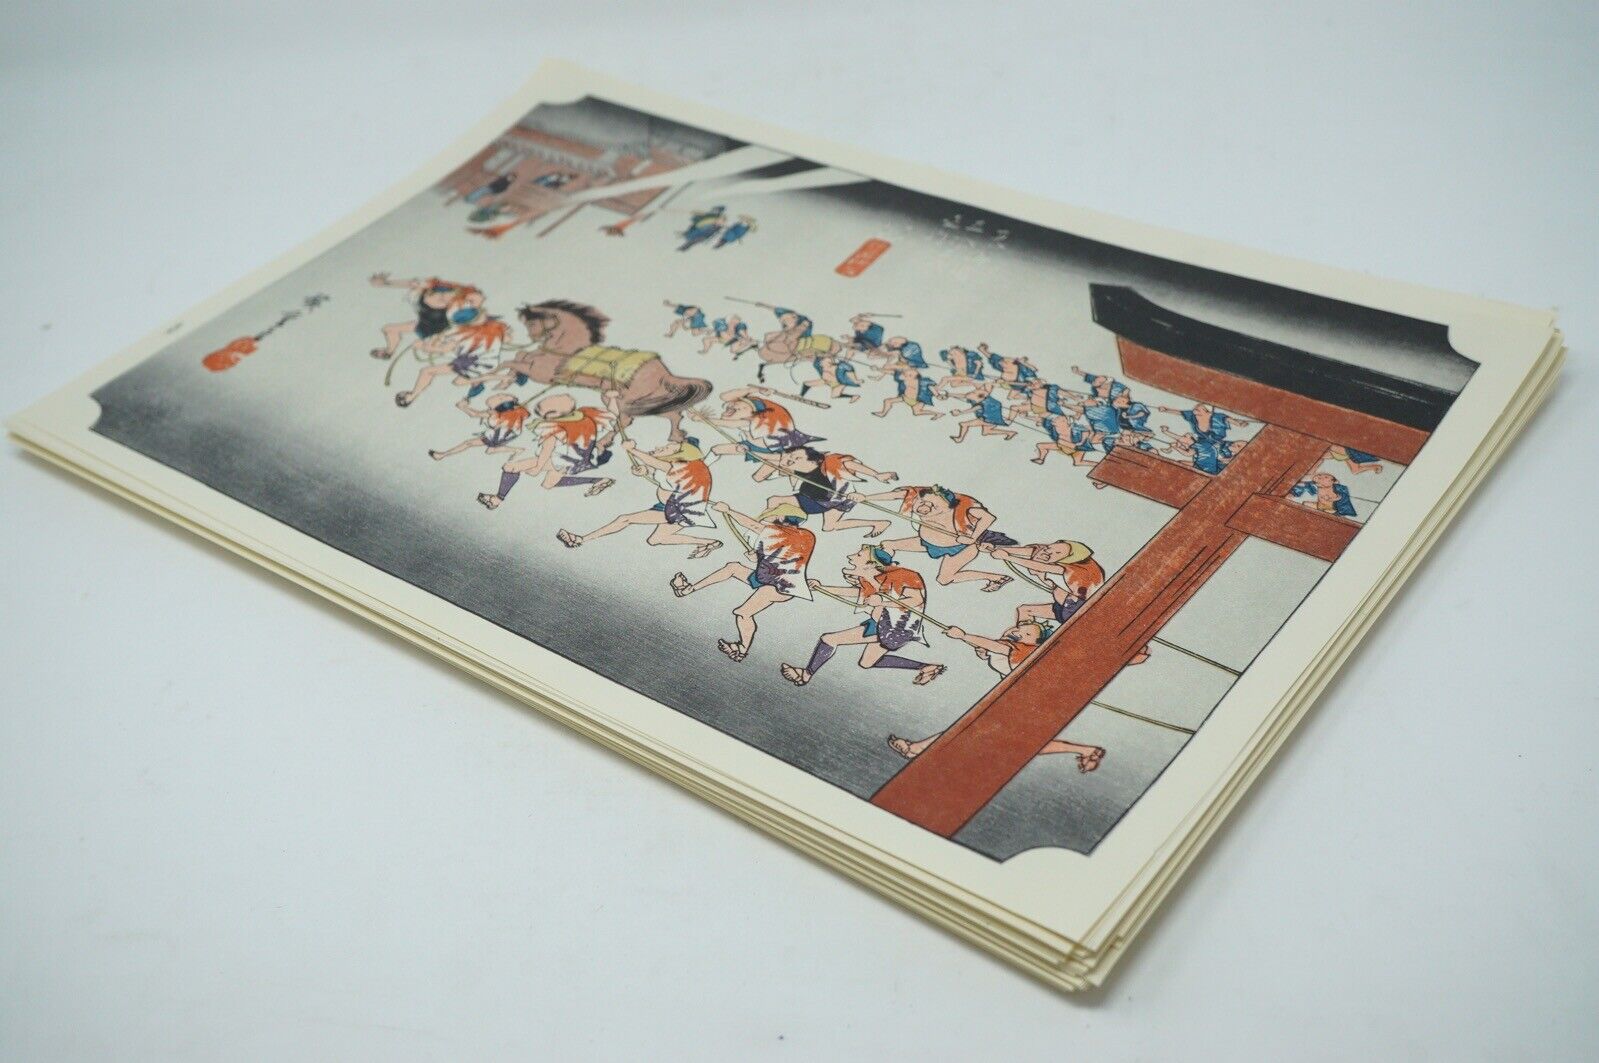 Utagagawa Hiroshige 53 Reprint Collection Machineprints from Kyoto Japan 0630C4